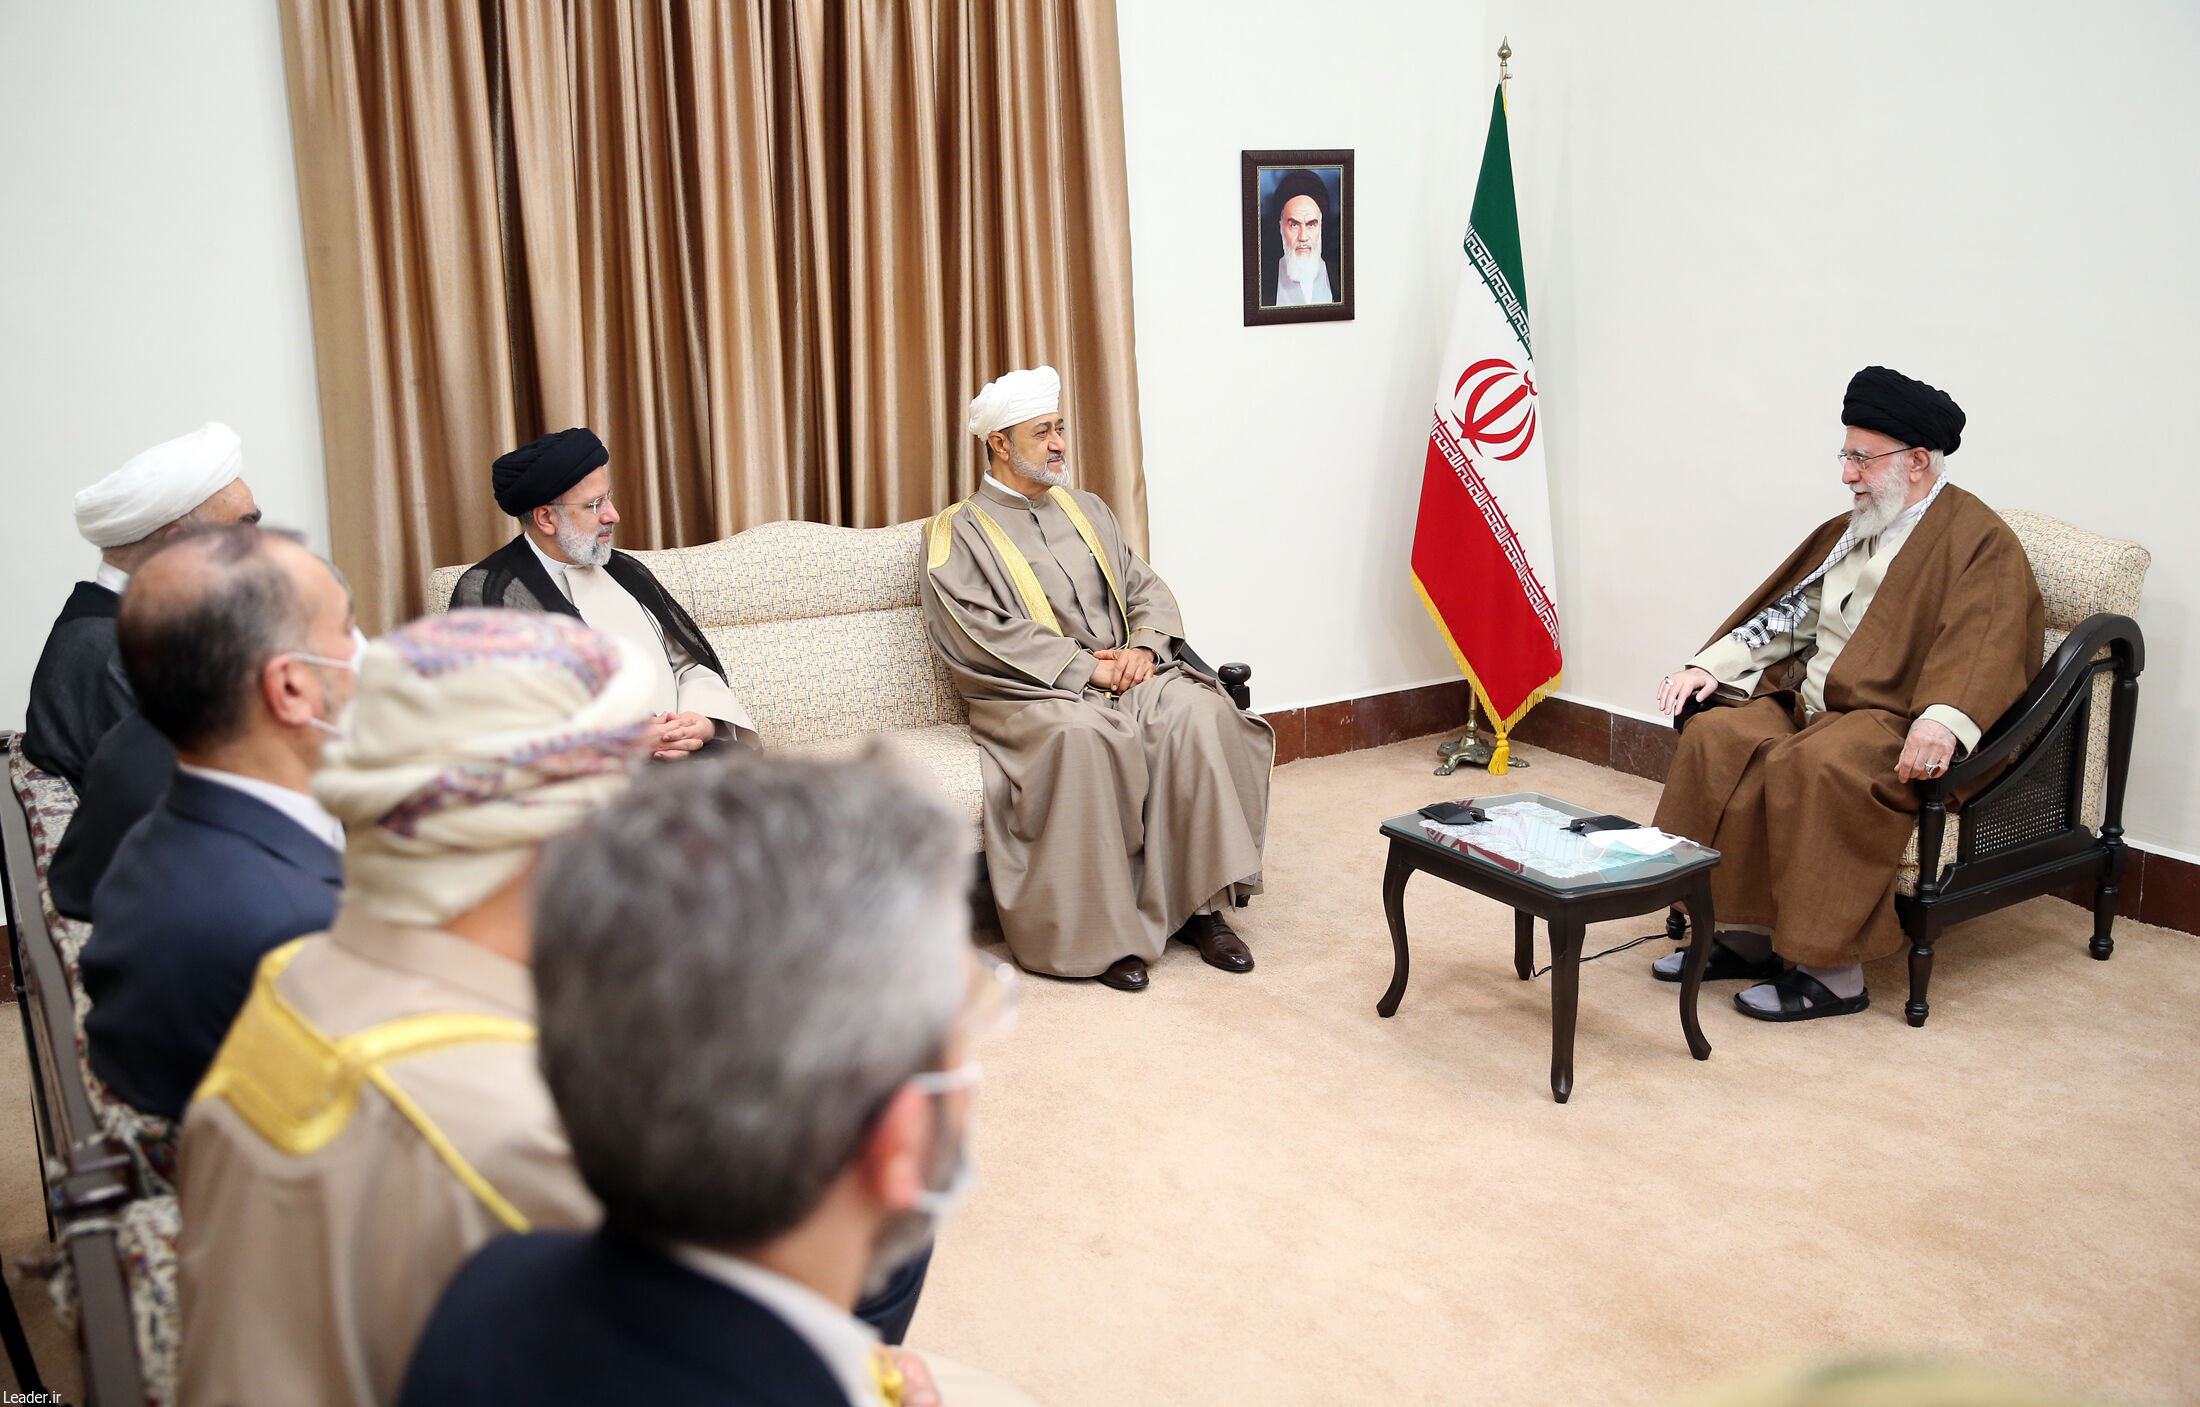 توسيع العلاقات بين إيران وعمان يصب في مصلحة البلدين ونرحب باستئناف العلاقات مع مصر
